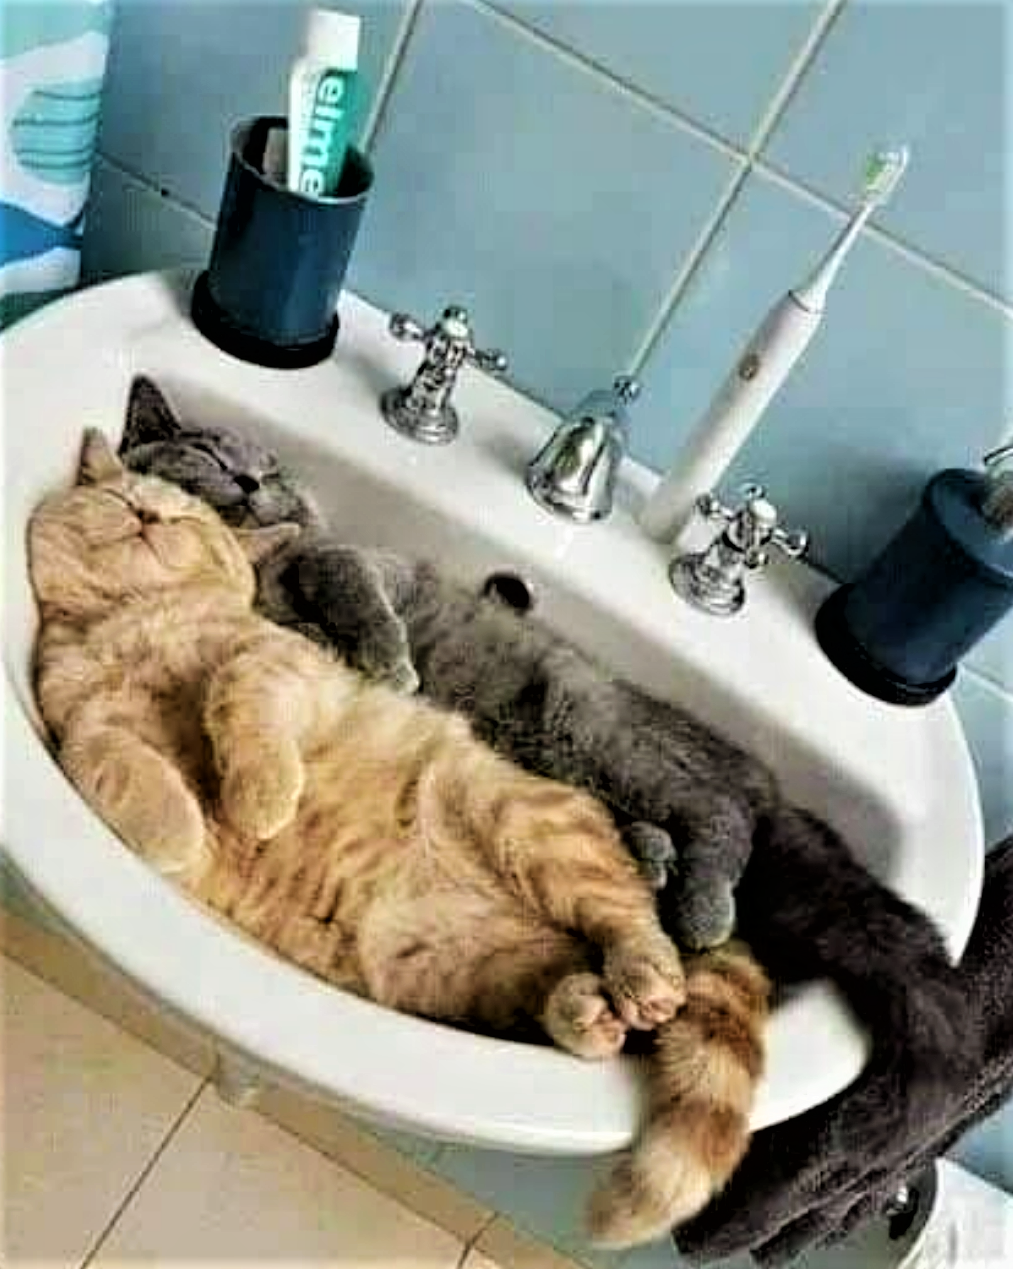 Too much catnip the night before!